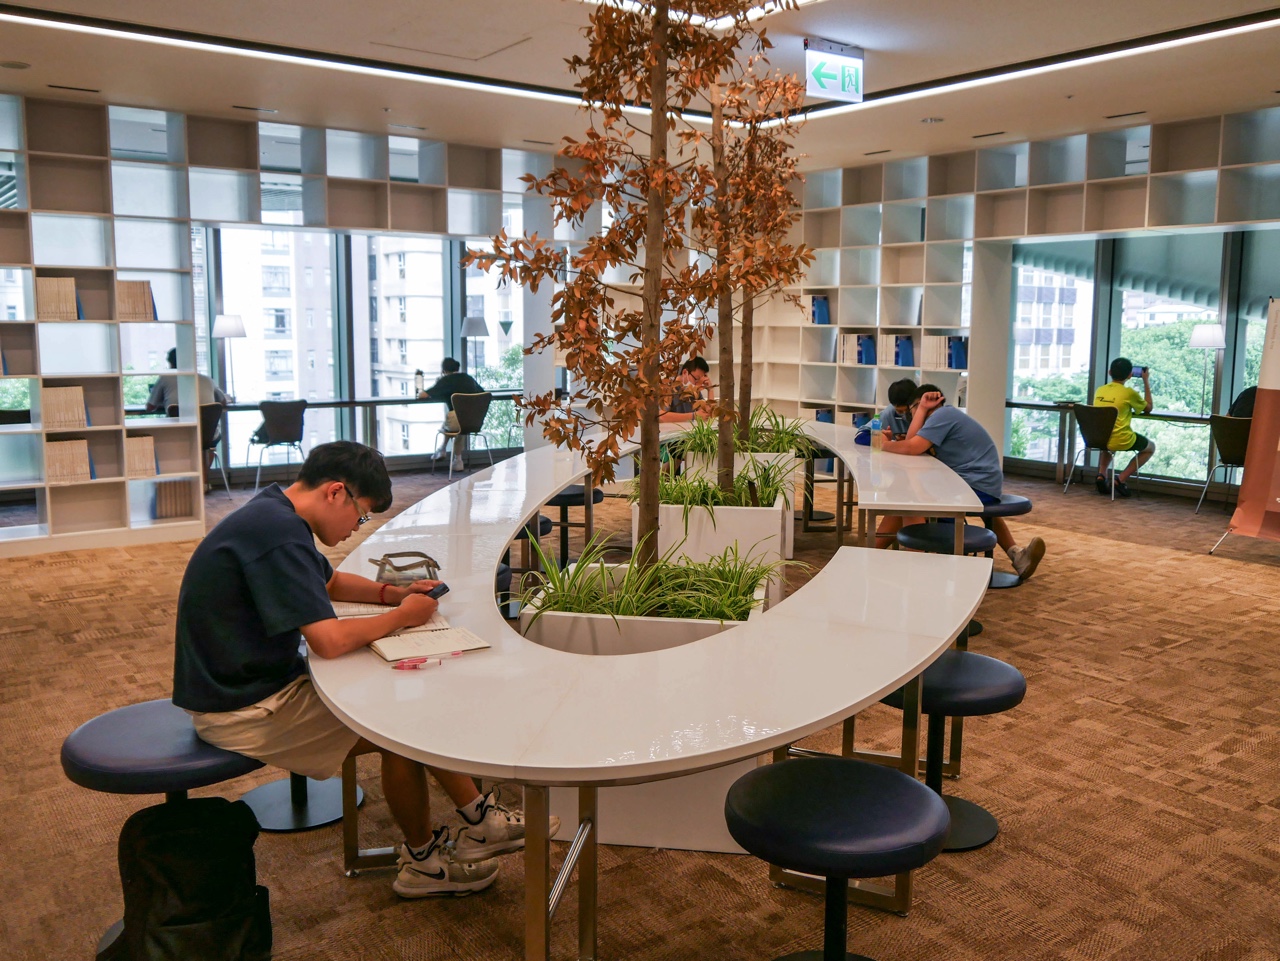 桃園市圖書館新總館の円形テーブルを利用する人々